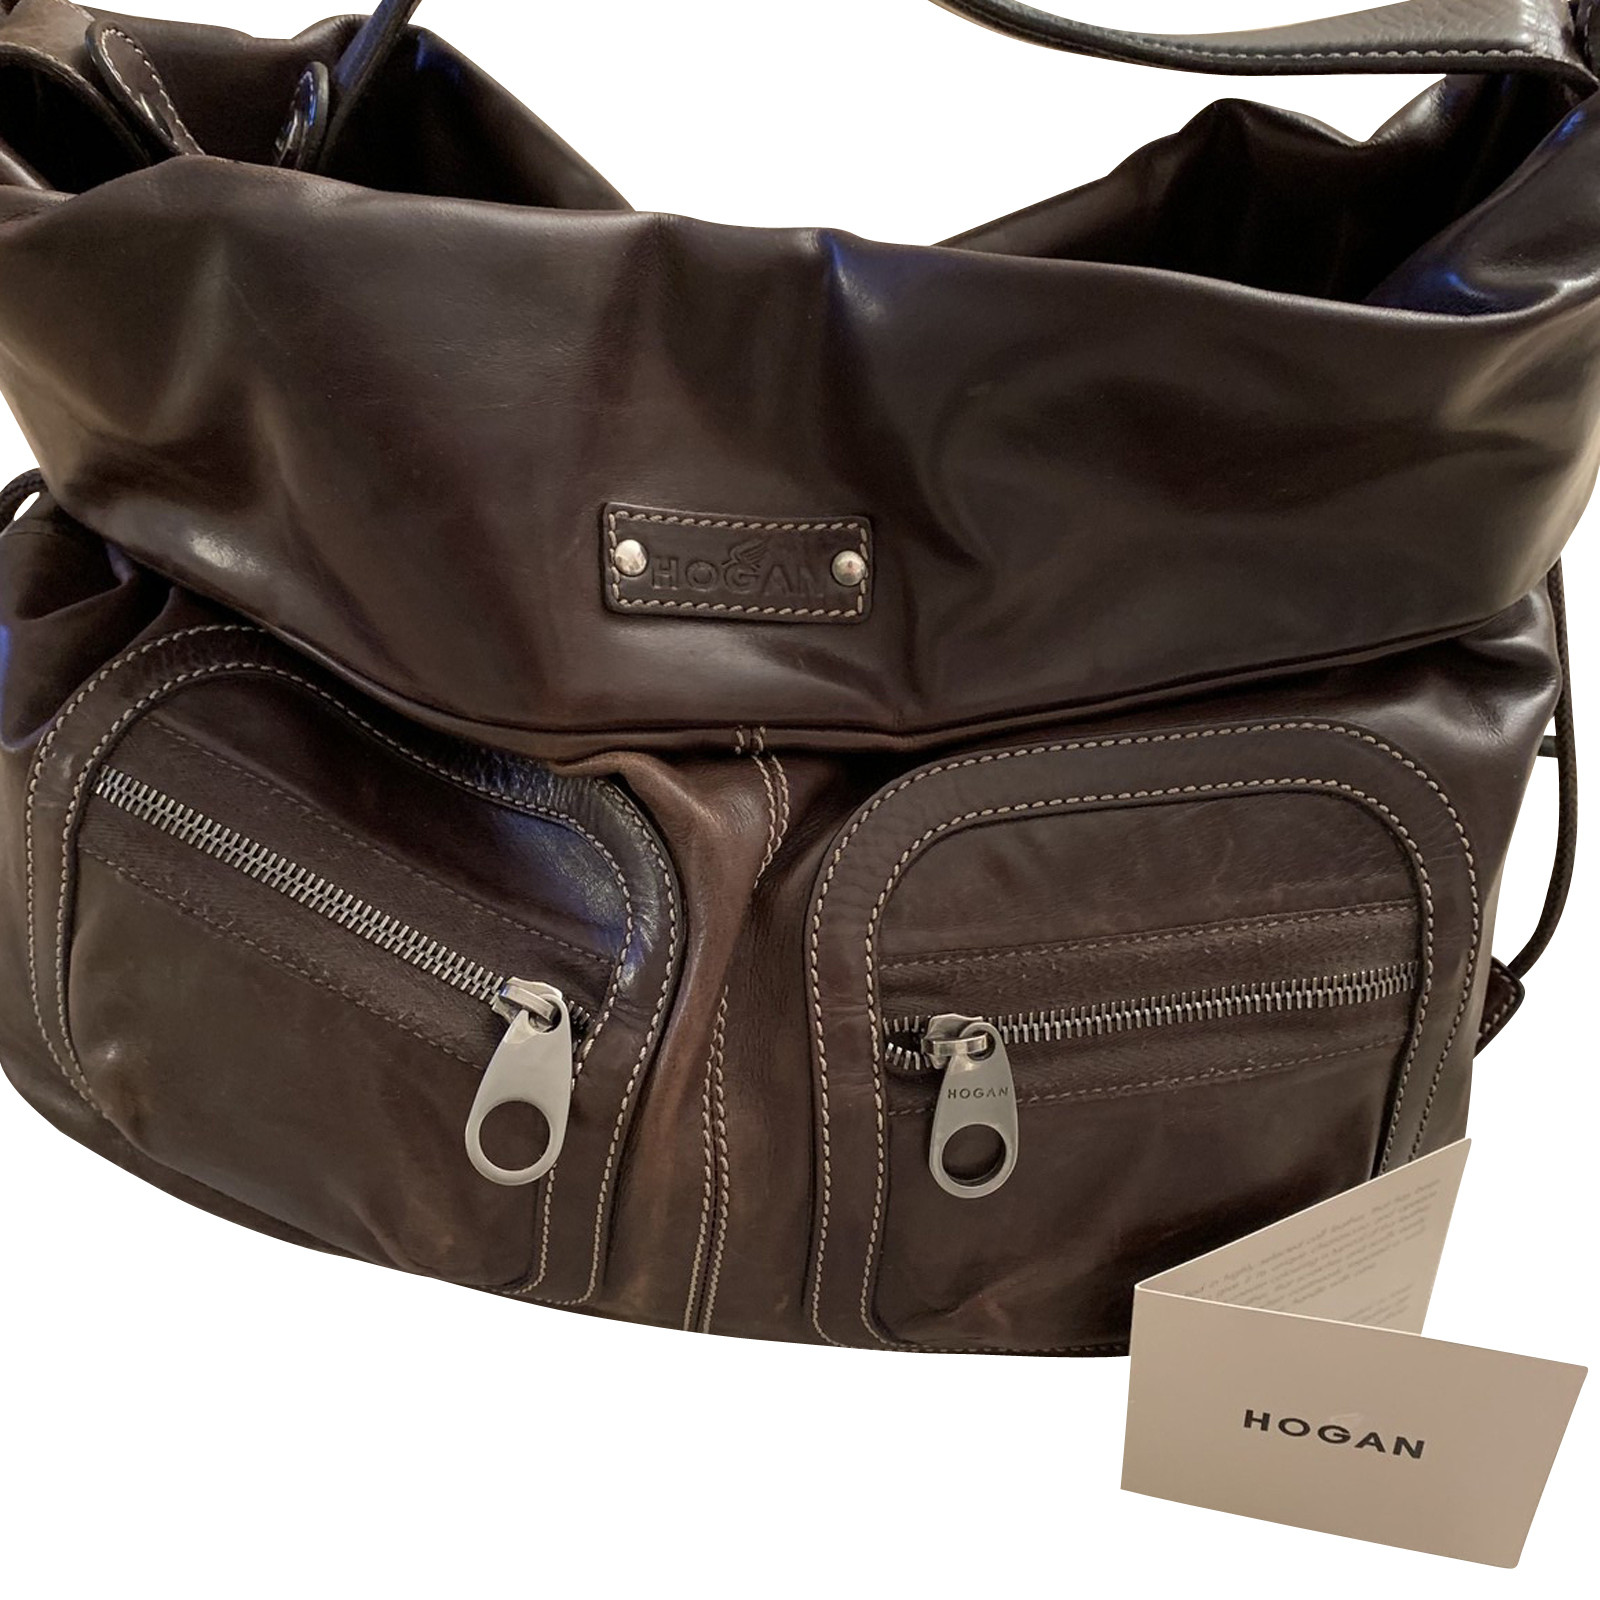 Hogan Shoulder bag Leather in Brown - Second Hand Hogan Shoulder bag  Leather in Brown buy used for 113€ (2545596)